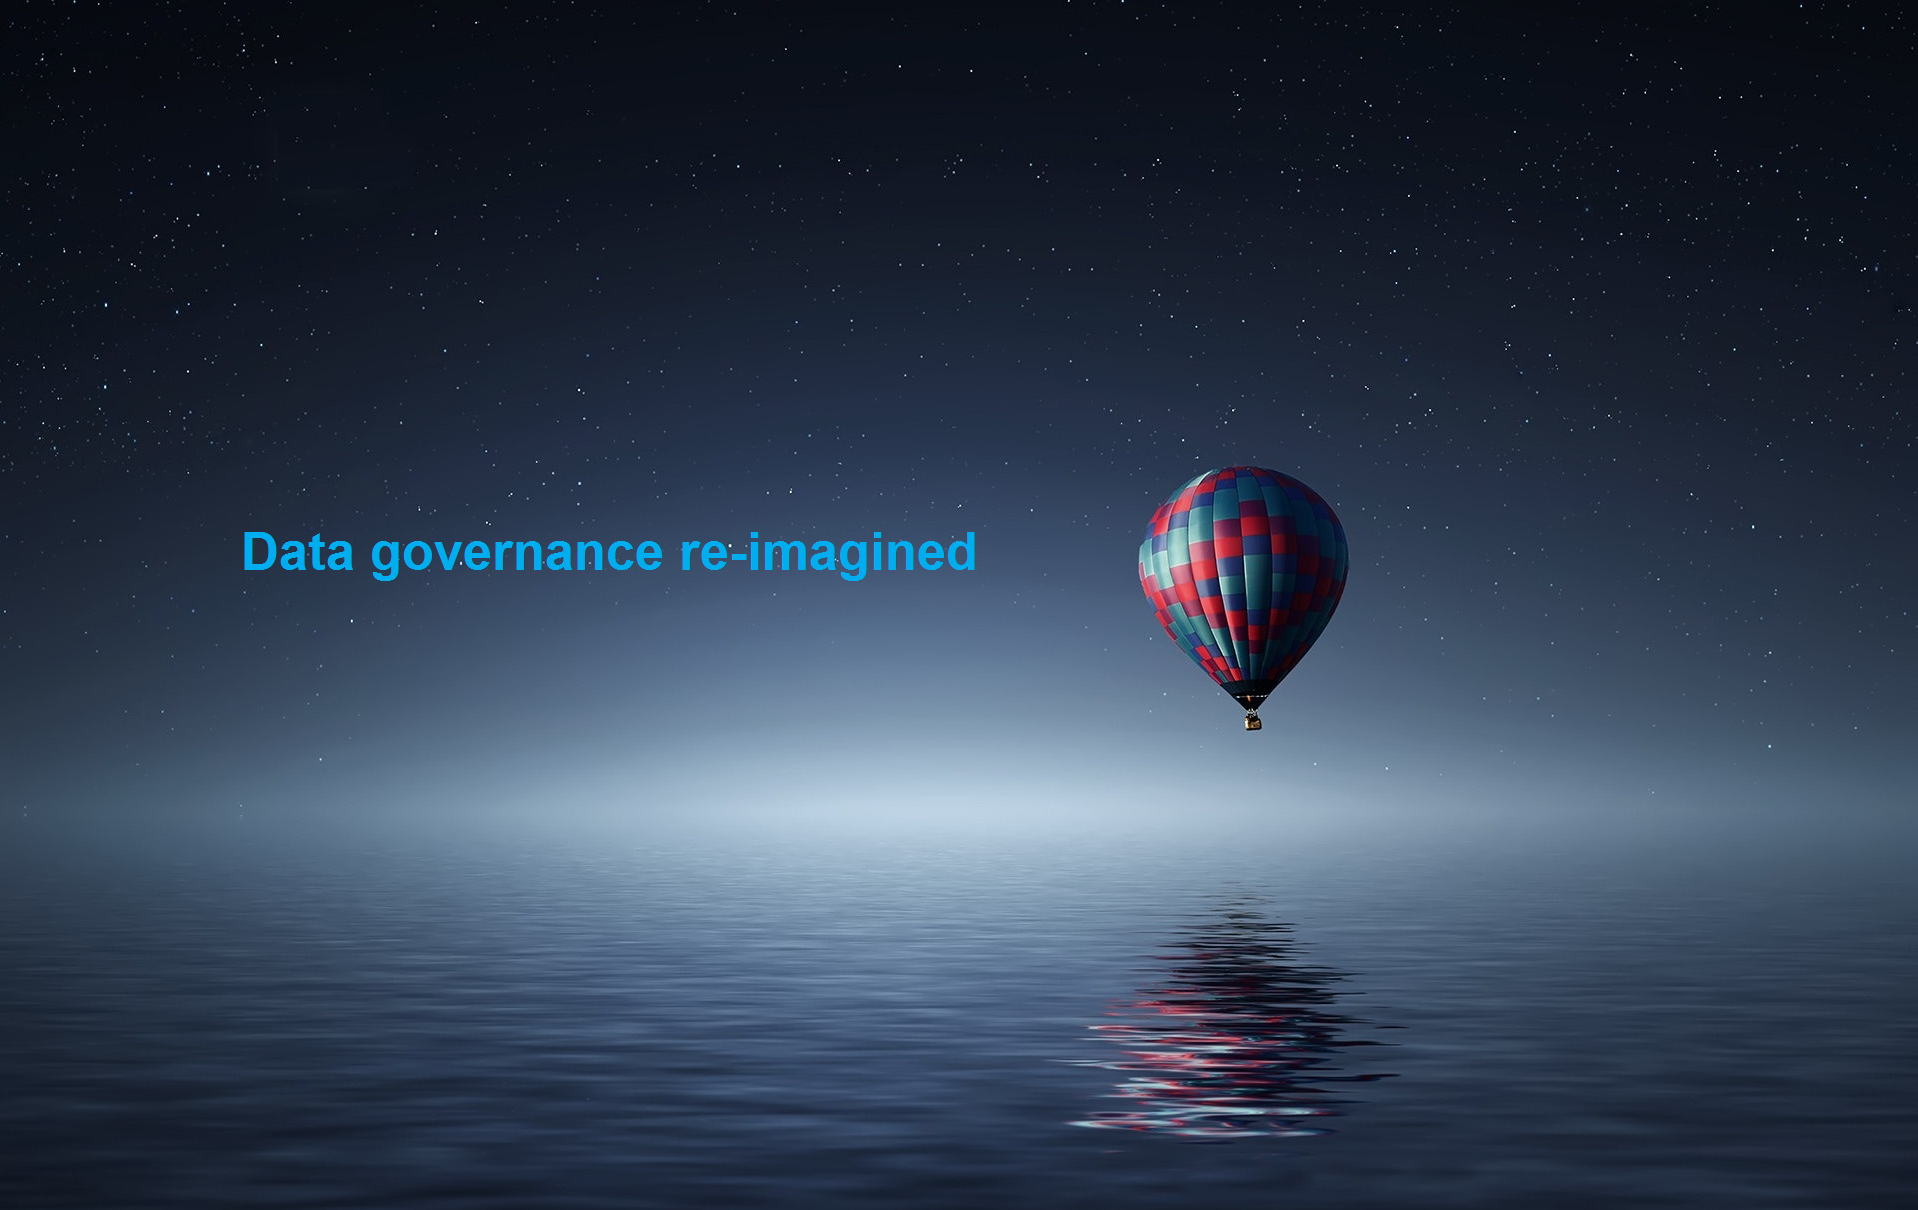 Data_gov_reimagined_full_3.png